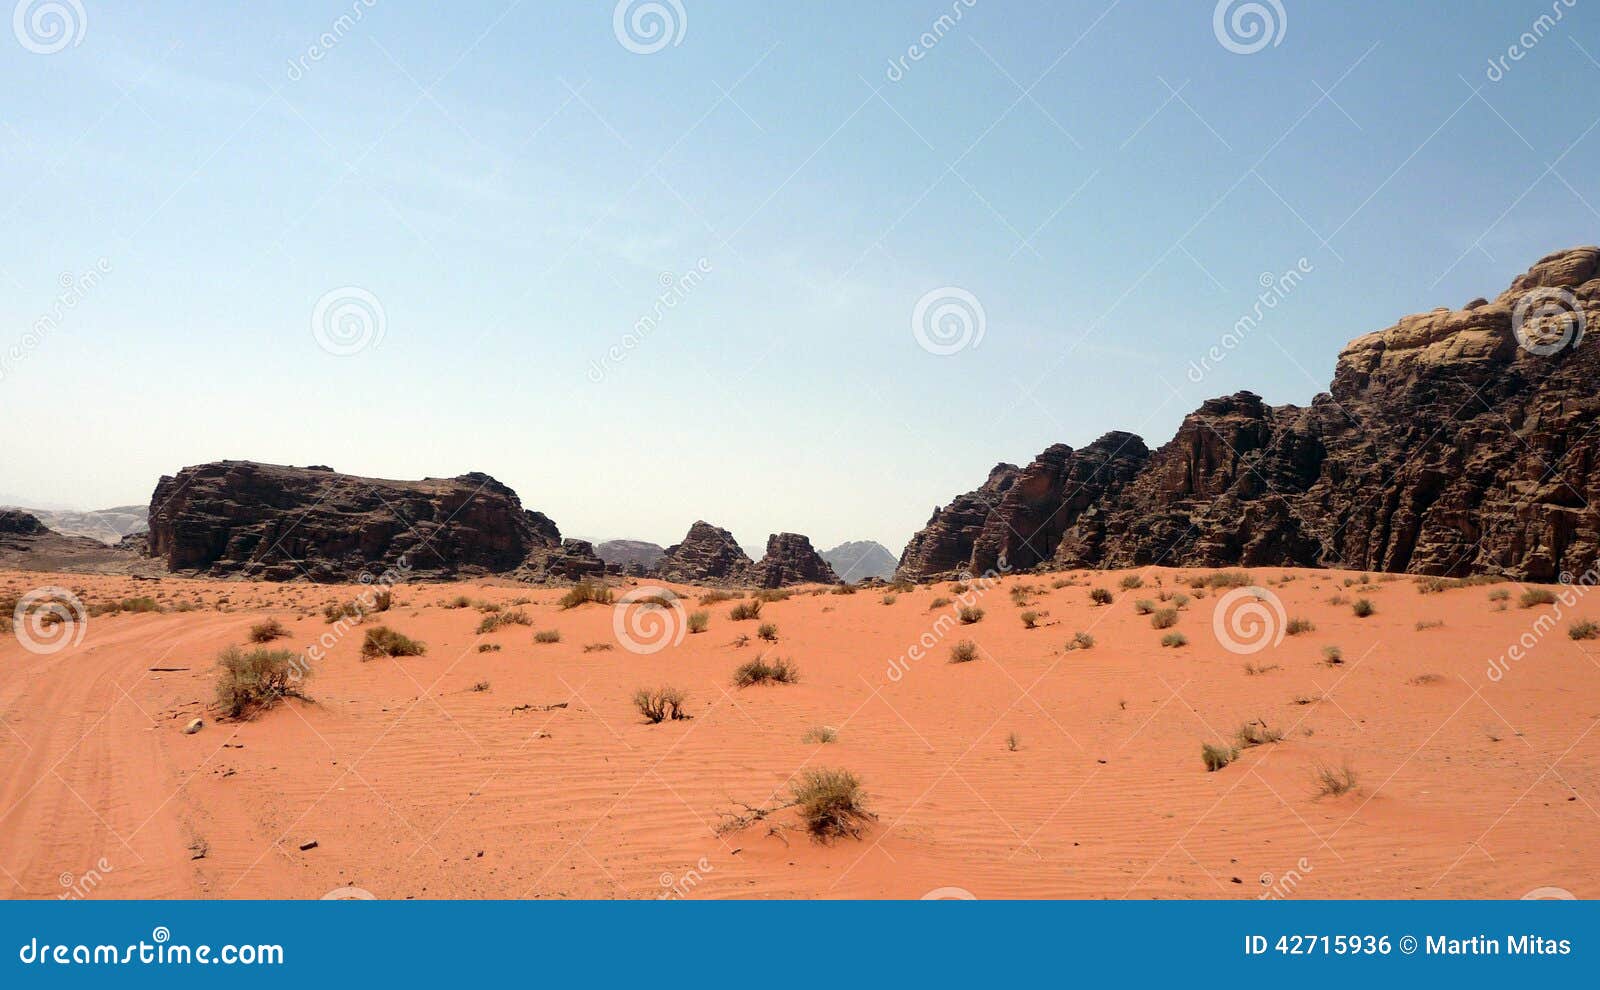 Jordan desert stock photo. Image of jordan, rock, wiew - 42715936